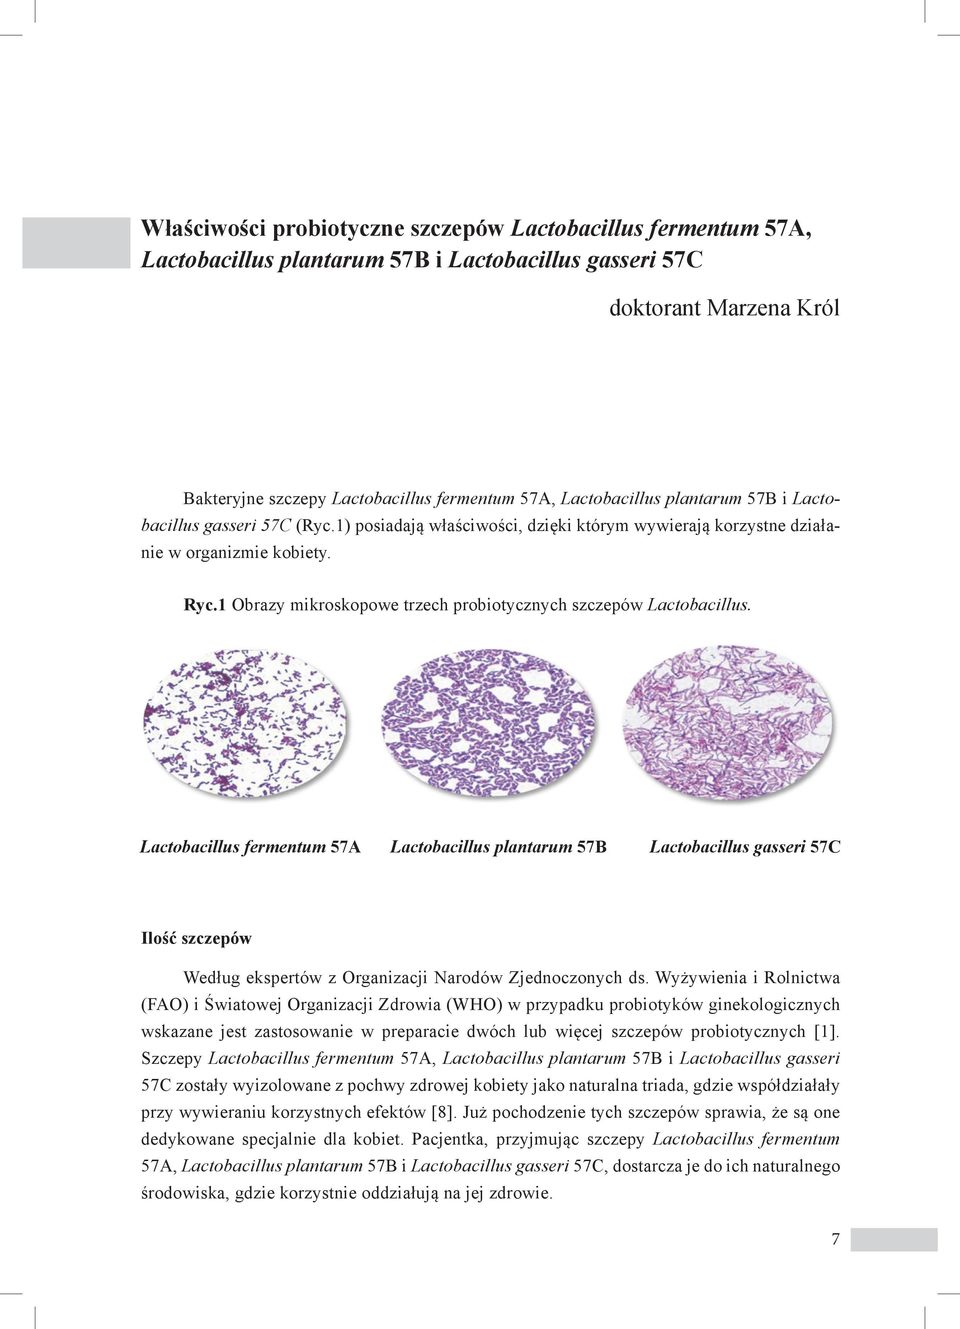 1 Obrazy mikroskopowe trzech probiotycznych szczepów Lactobacillus.